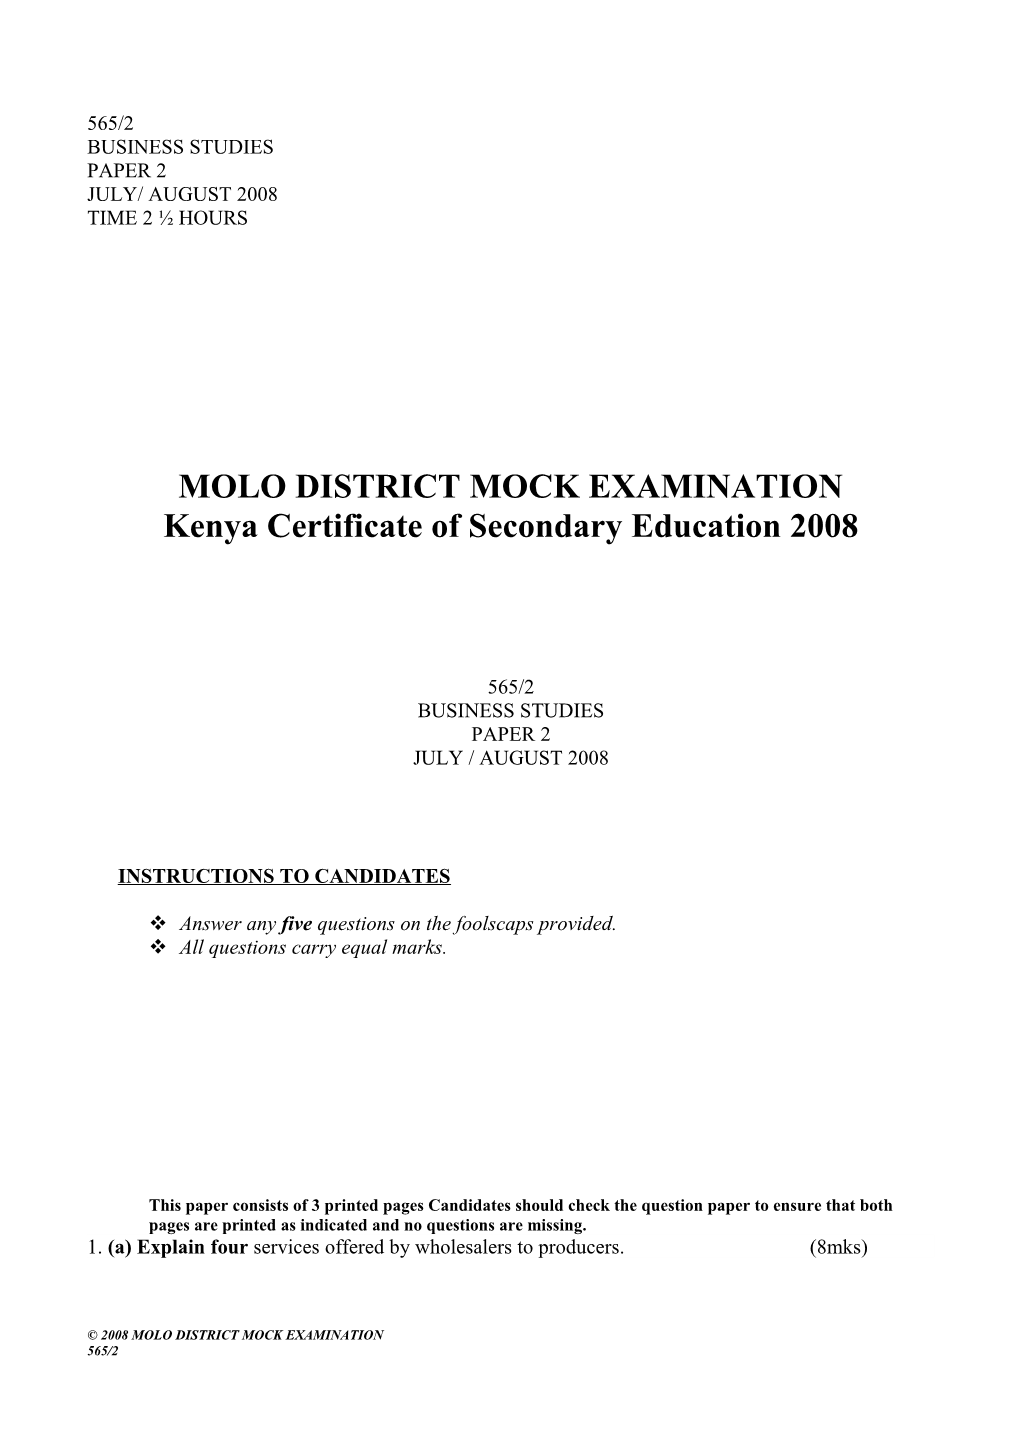 Molo District Mock Examination s1